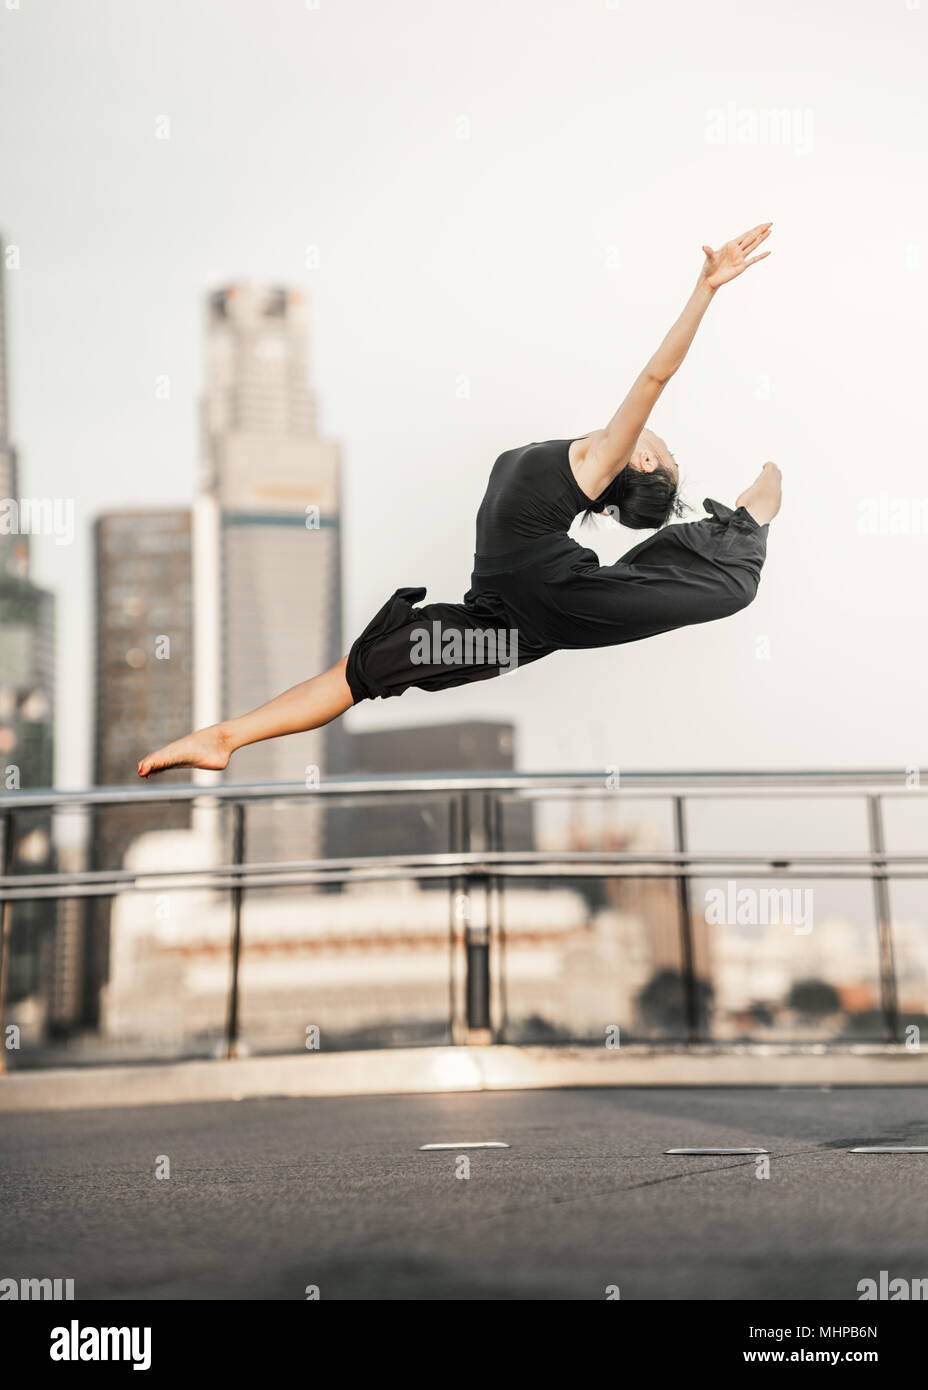 Pasión... Mujer joven deportista realiza un perfecto salto alto, sobre un puente con fondo de rascacielos Foto de stock